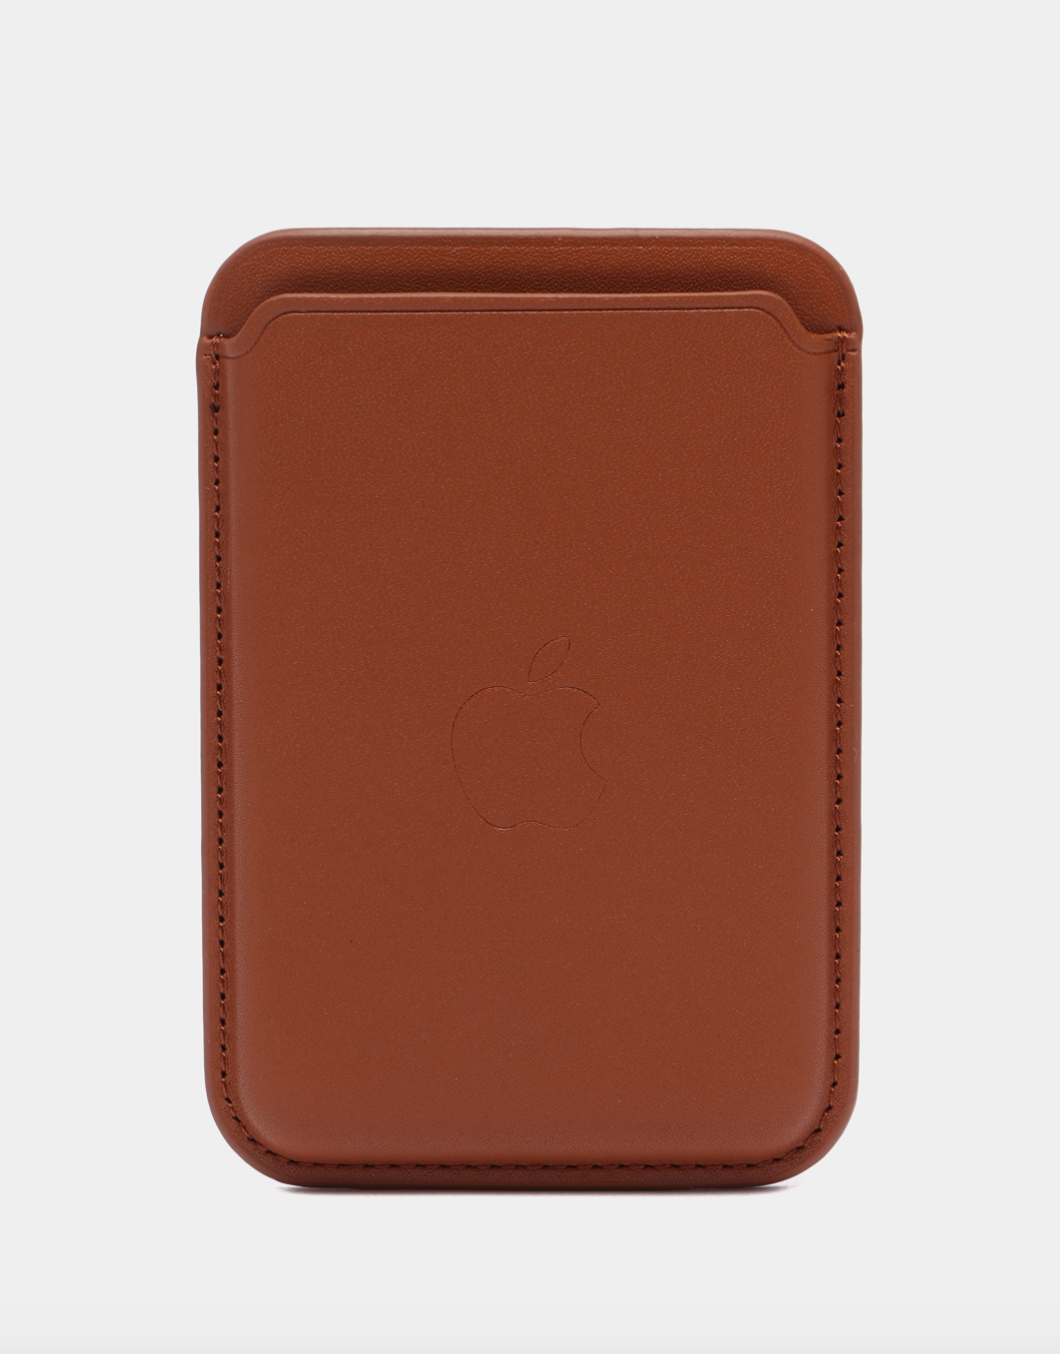 Чехол-бумажник коричневый картхолдер на iPhone с поддержкой MagSafe Leather Wallet